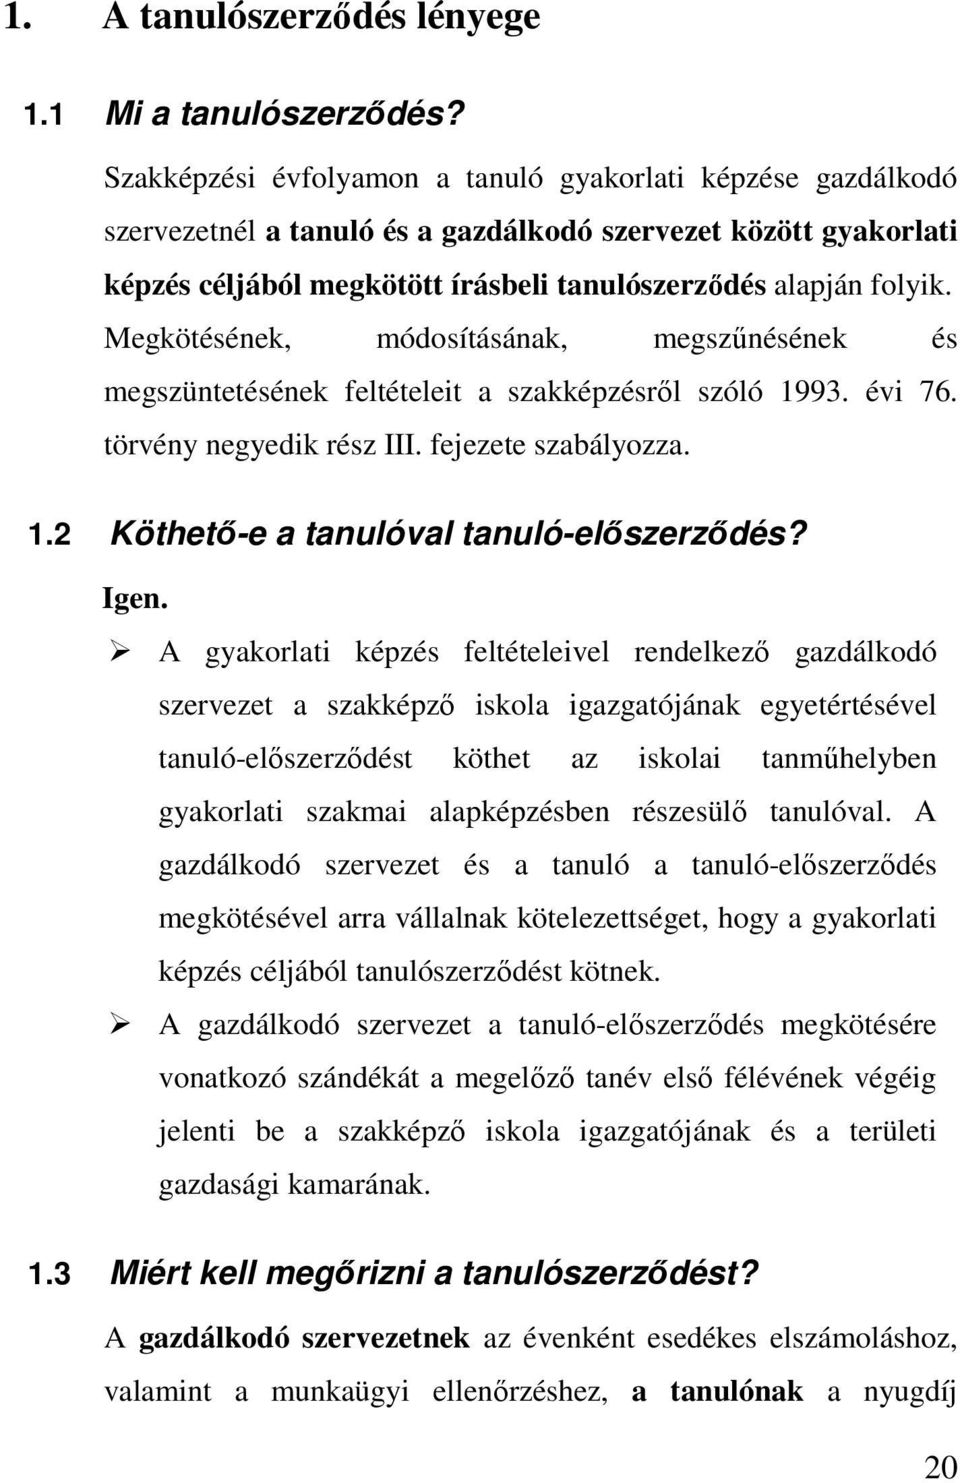 Megkötésének, módosításának, megszőnésének és megszüntetésének feltételeit a szakképzésrıl szóló 1993. évi 76. törvény negyedik rész III. fejezete szabályozza. 1.2 Köthetı-e a tanulóval tanuló-elıszerzıdés?